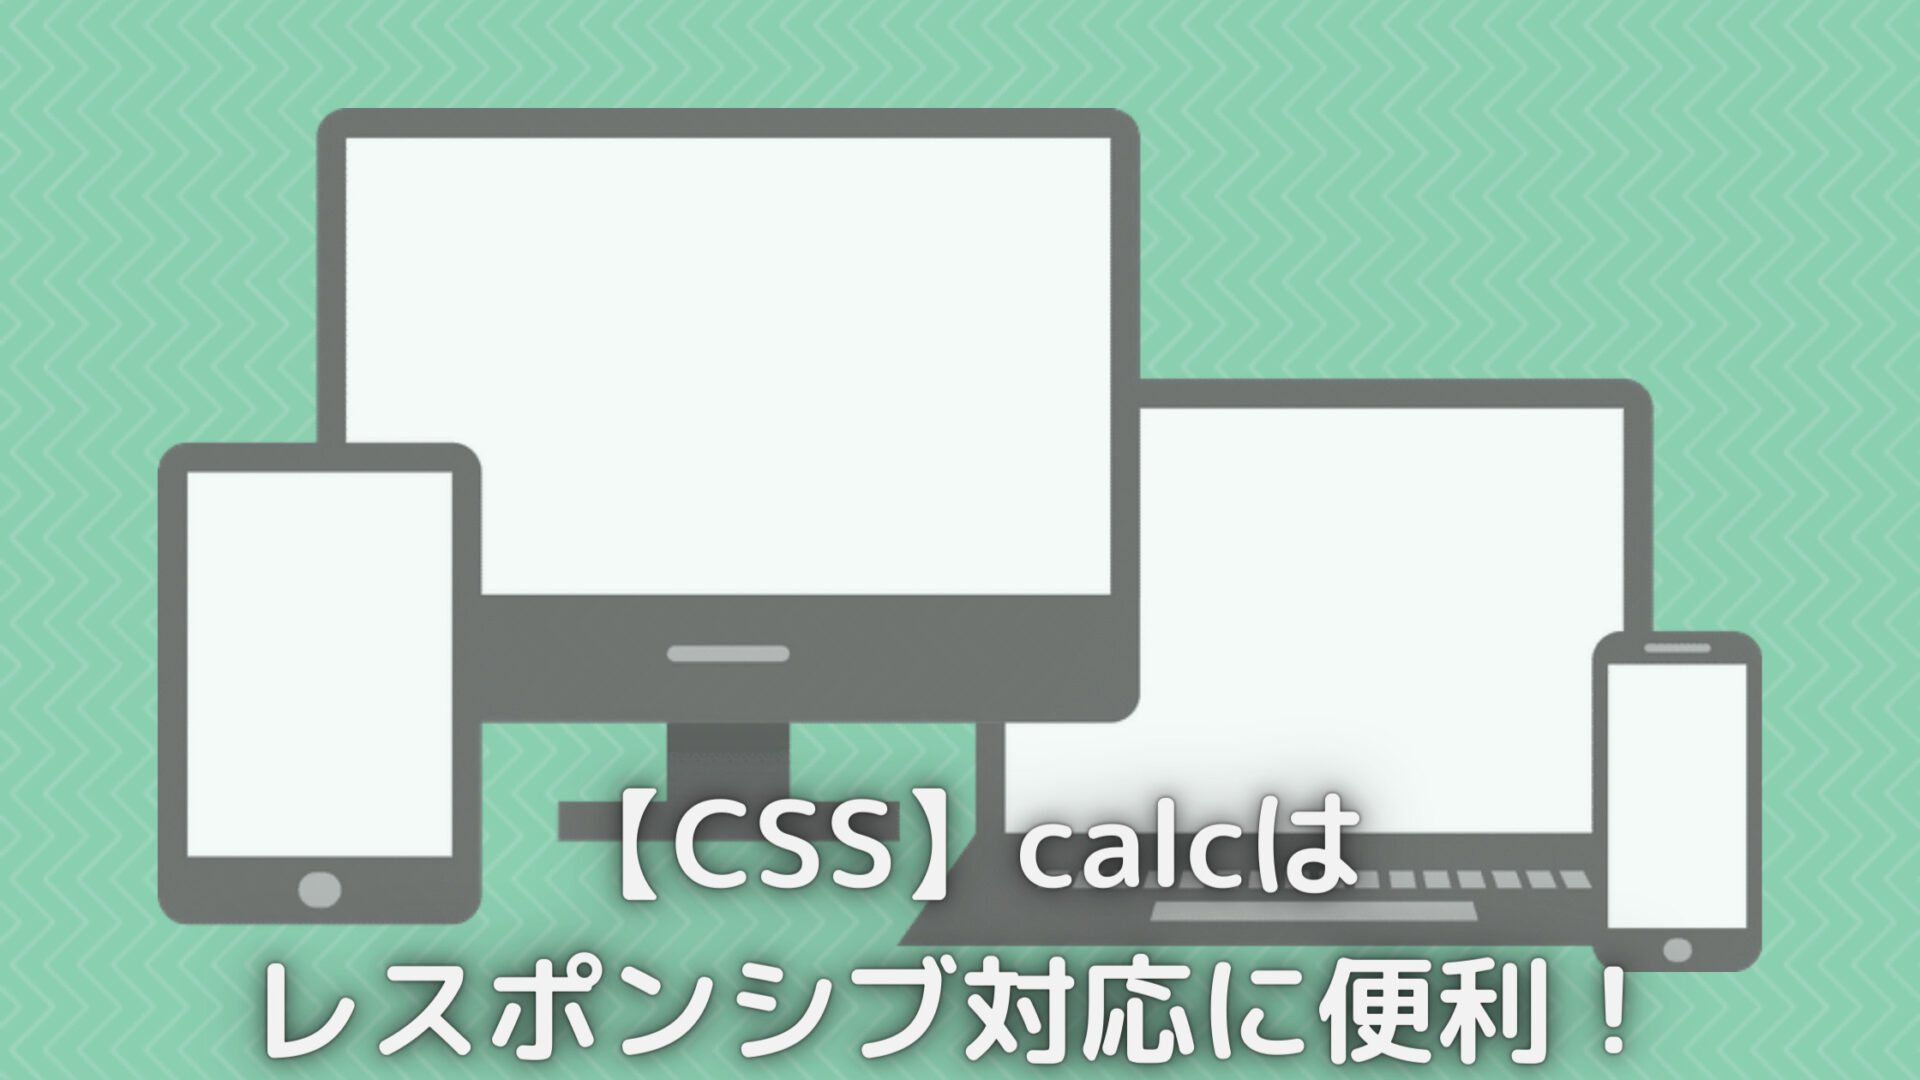 【CSS】calcは レスポンシブ対応に便利！